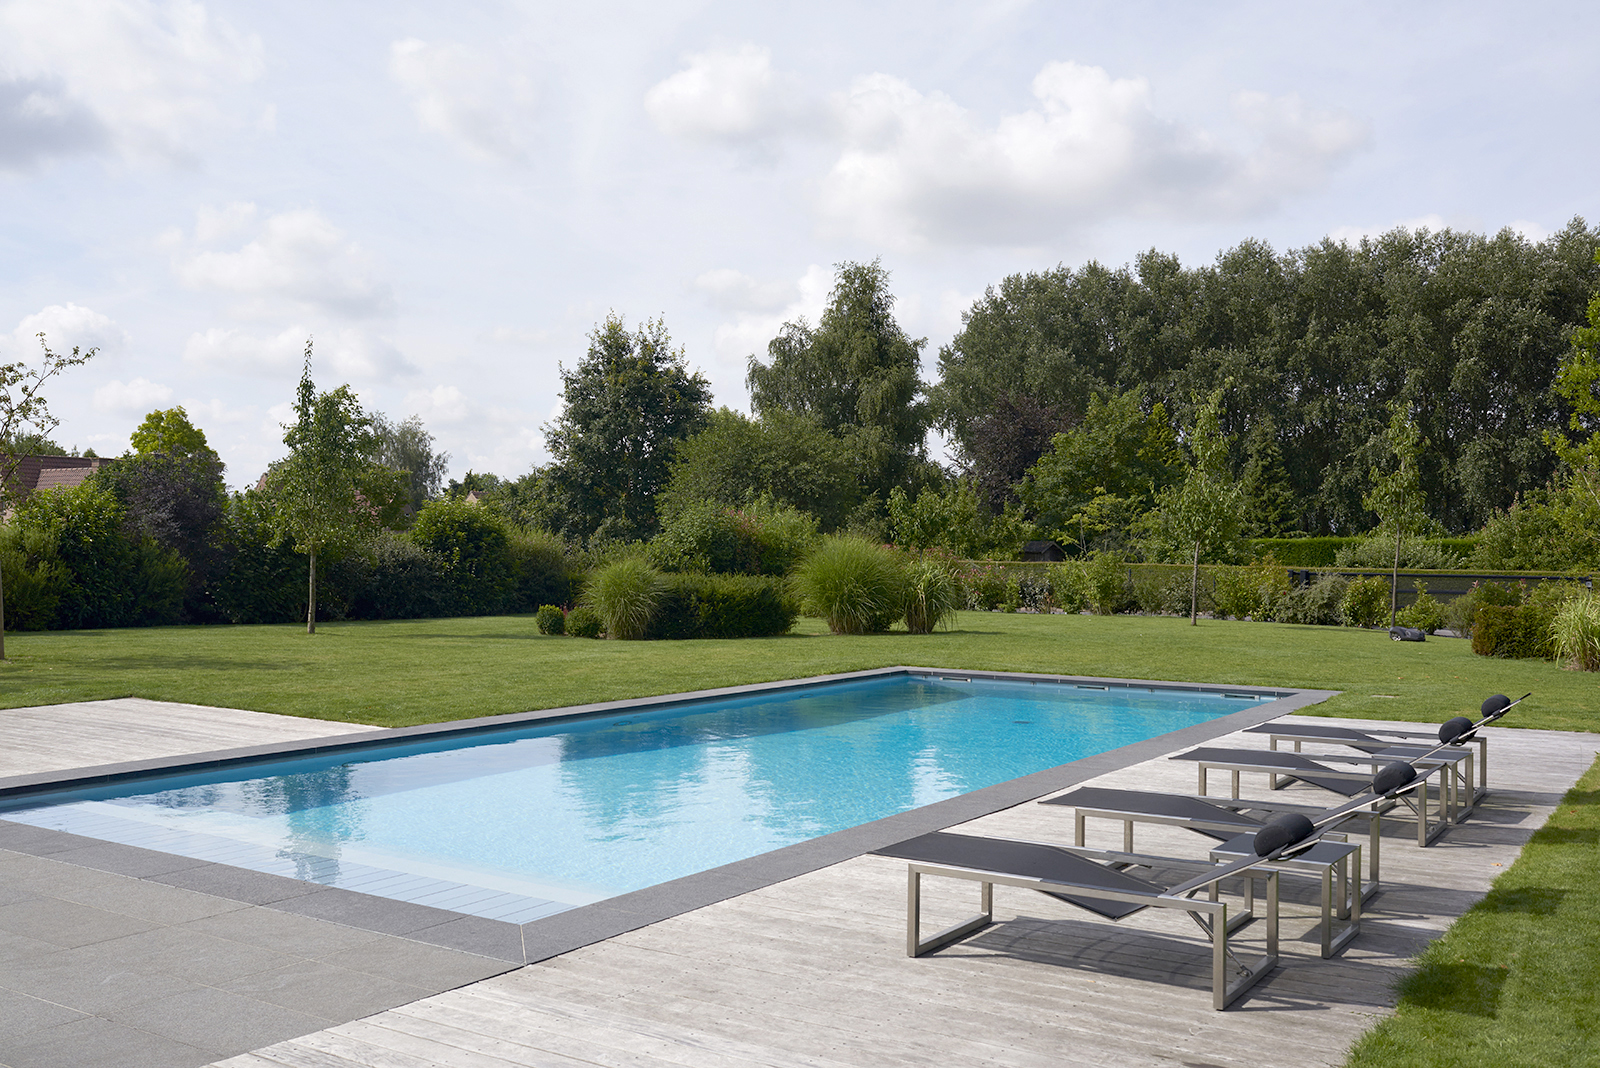 piscine rectangulaire dans un jardin arboré